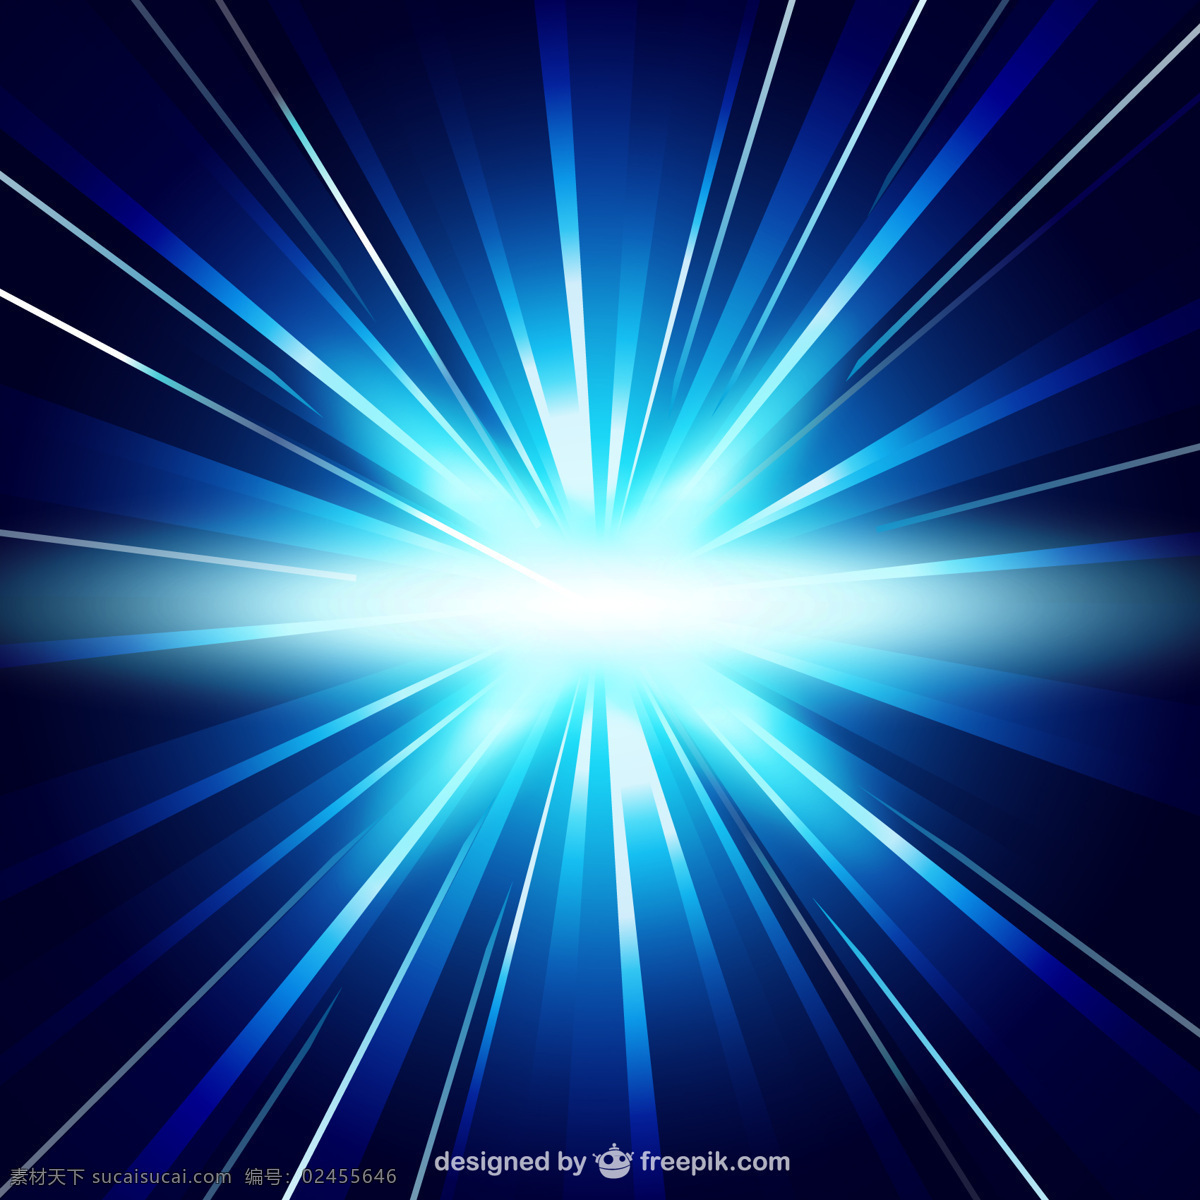 蓝色背景光 背景 抽象 灯光 模板 蓝色的背景 蓝色的壁纸 霓虹灯 能源 插图 光线 抽象的设计 未来 阳光 黑色